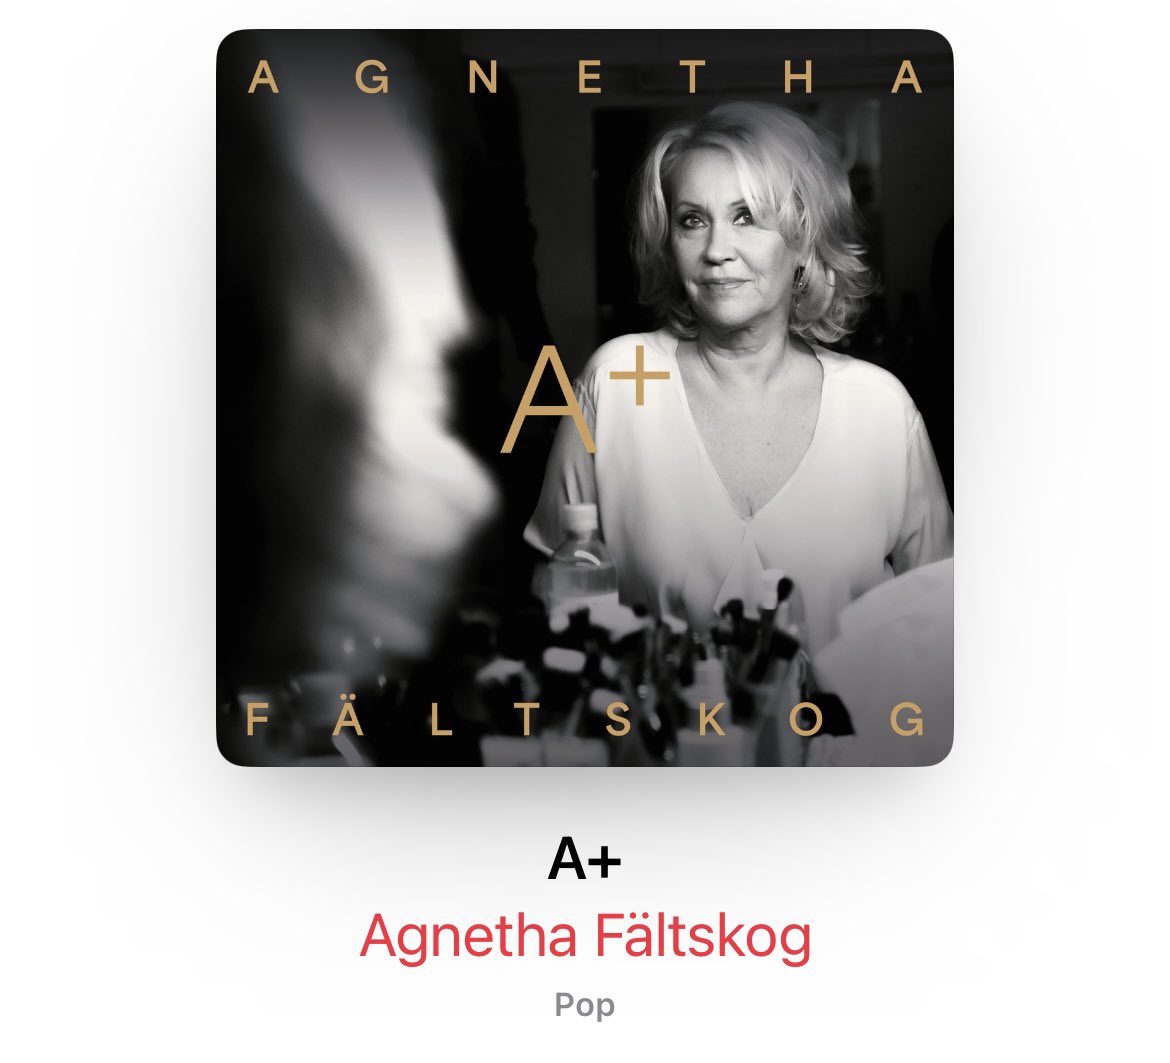 Agnetha Fältskog saving the current music industry! 
Love this! 
#AgnethaFältskog #ABBA